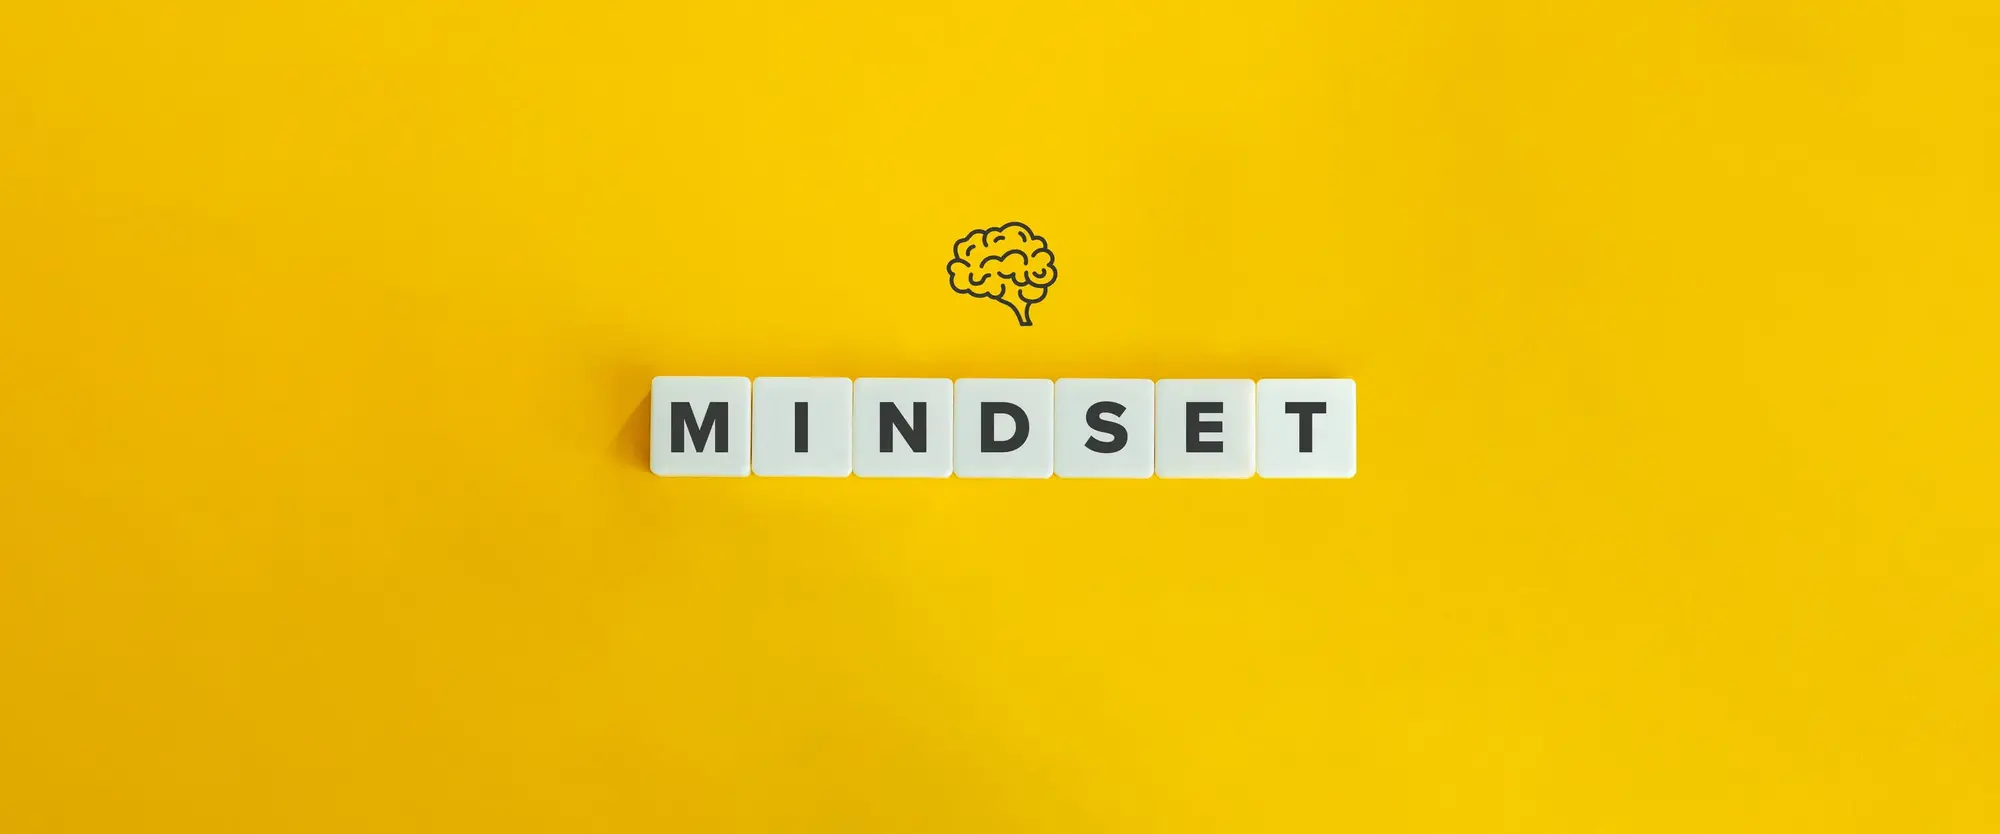 Das Wort Mindset aus Buchstabensteinen gelegt auf einem gelben Hintergrund. Darüber die Zeichnung eines Gehirns.